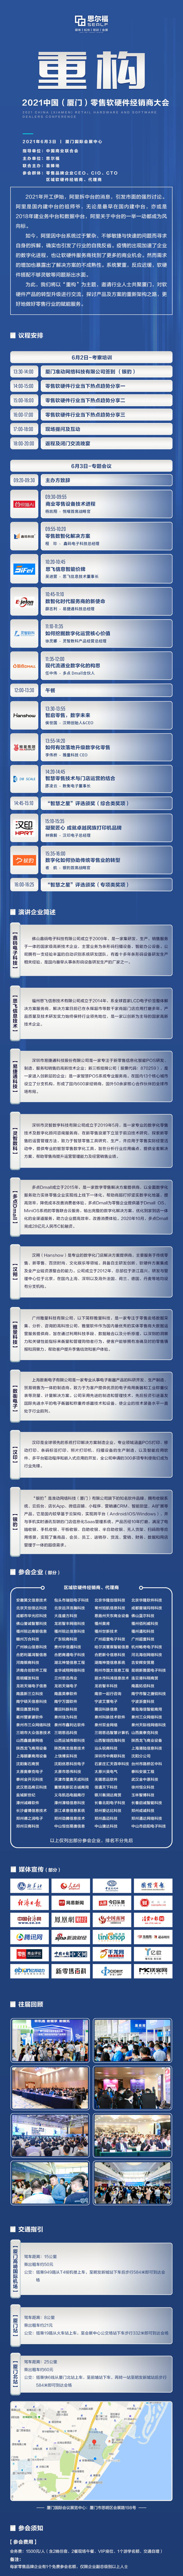 2021中国（厦门）零售软硬件经销商大会